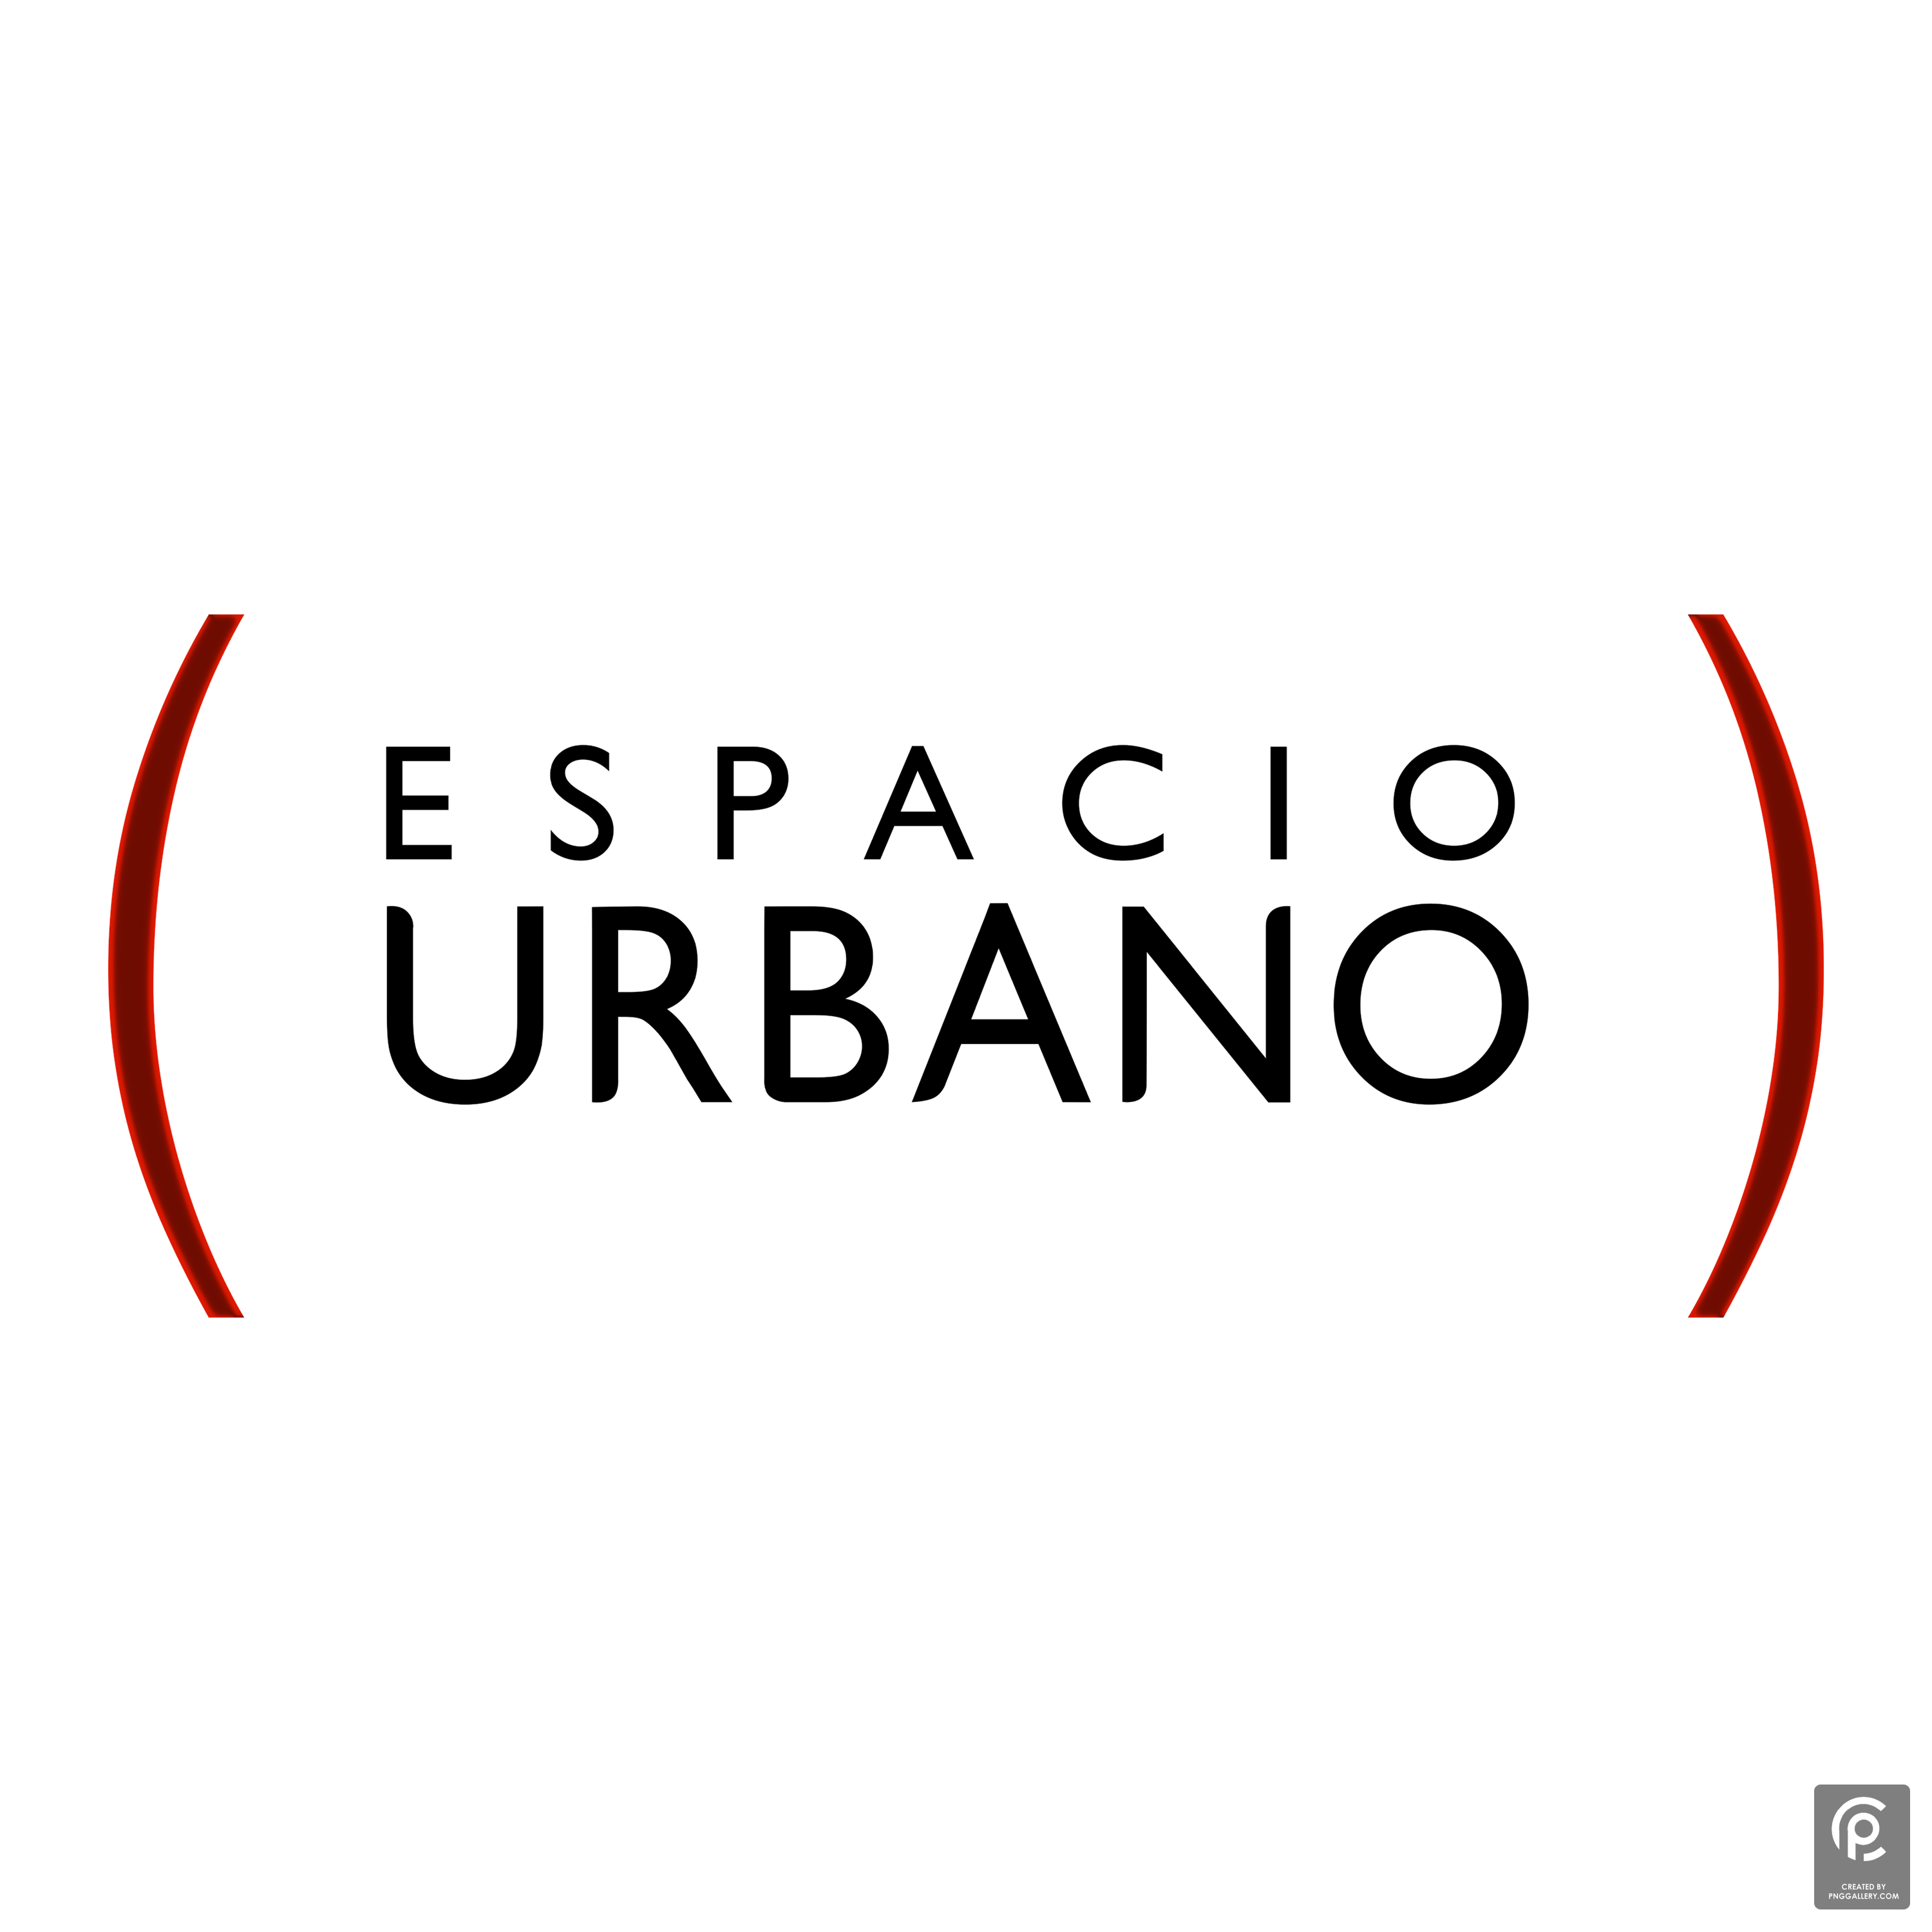 Logotipo Espacio Urbano Logo Transparent Gallery